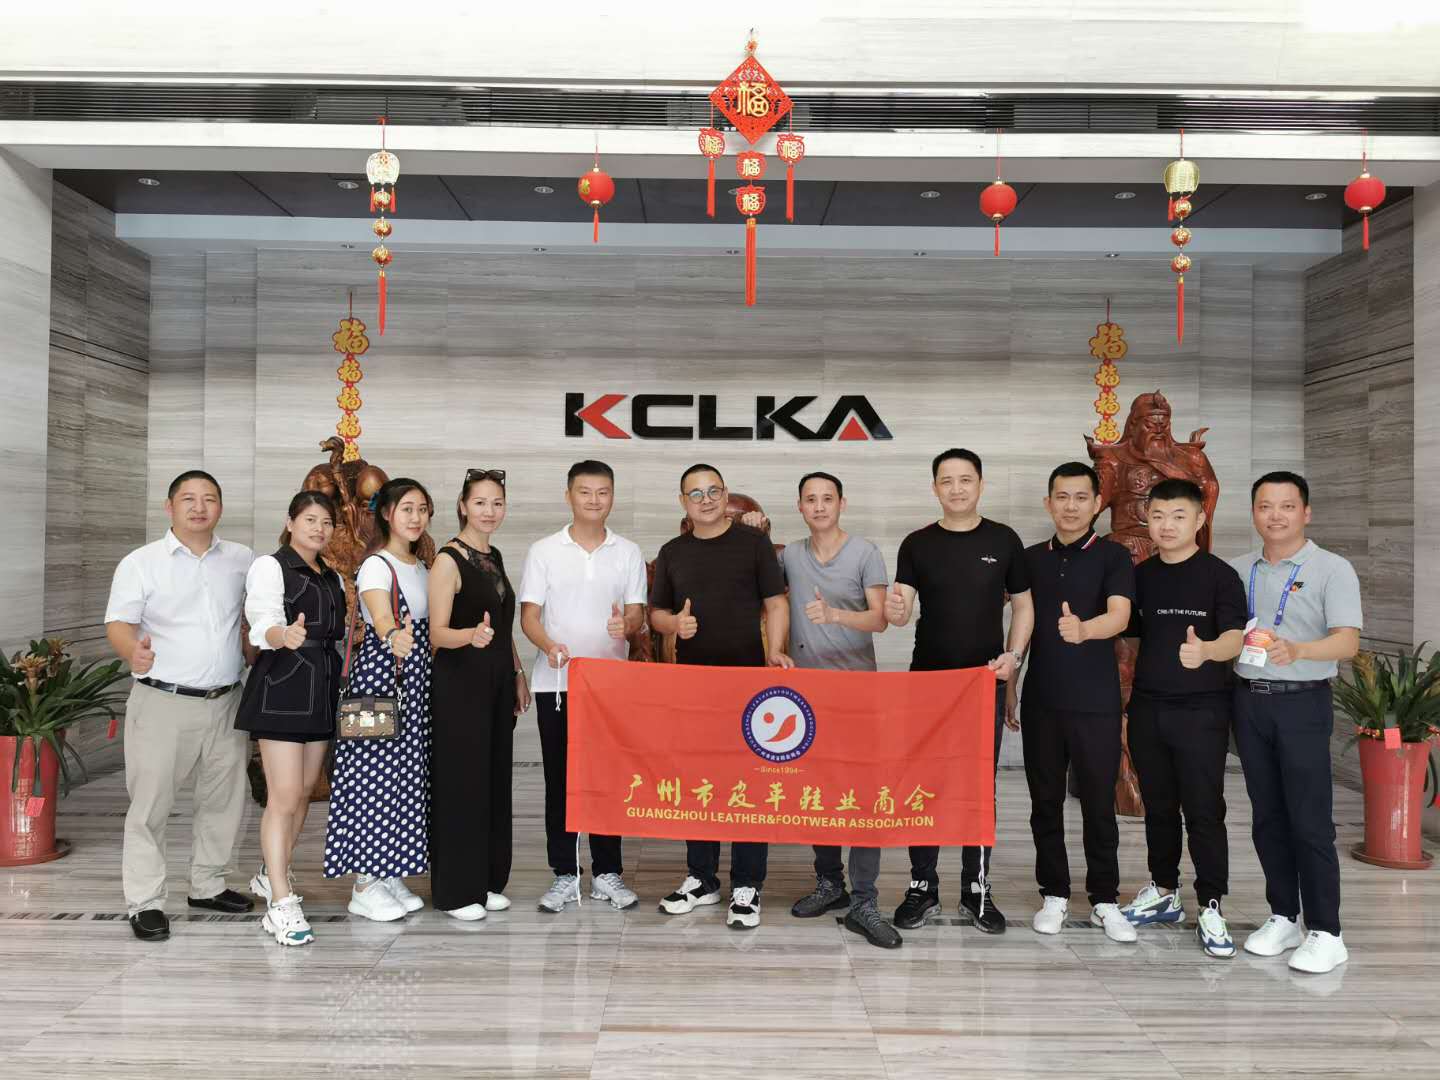 暨展同期第二站，广州市皮革鞋业商会考察团拜访新凯嘉机器